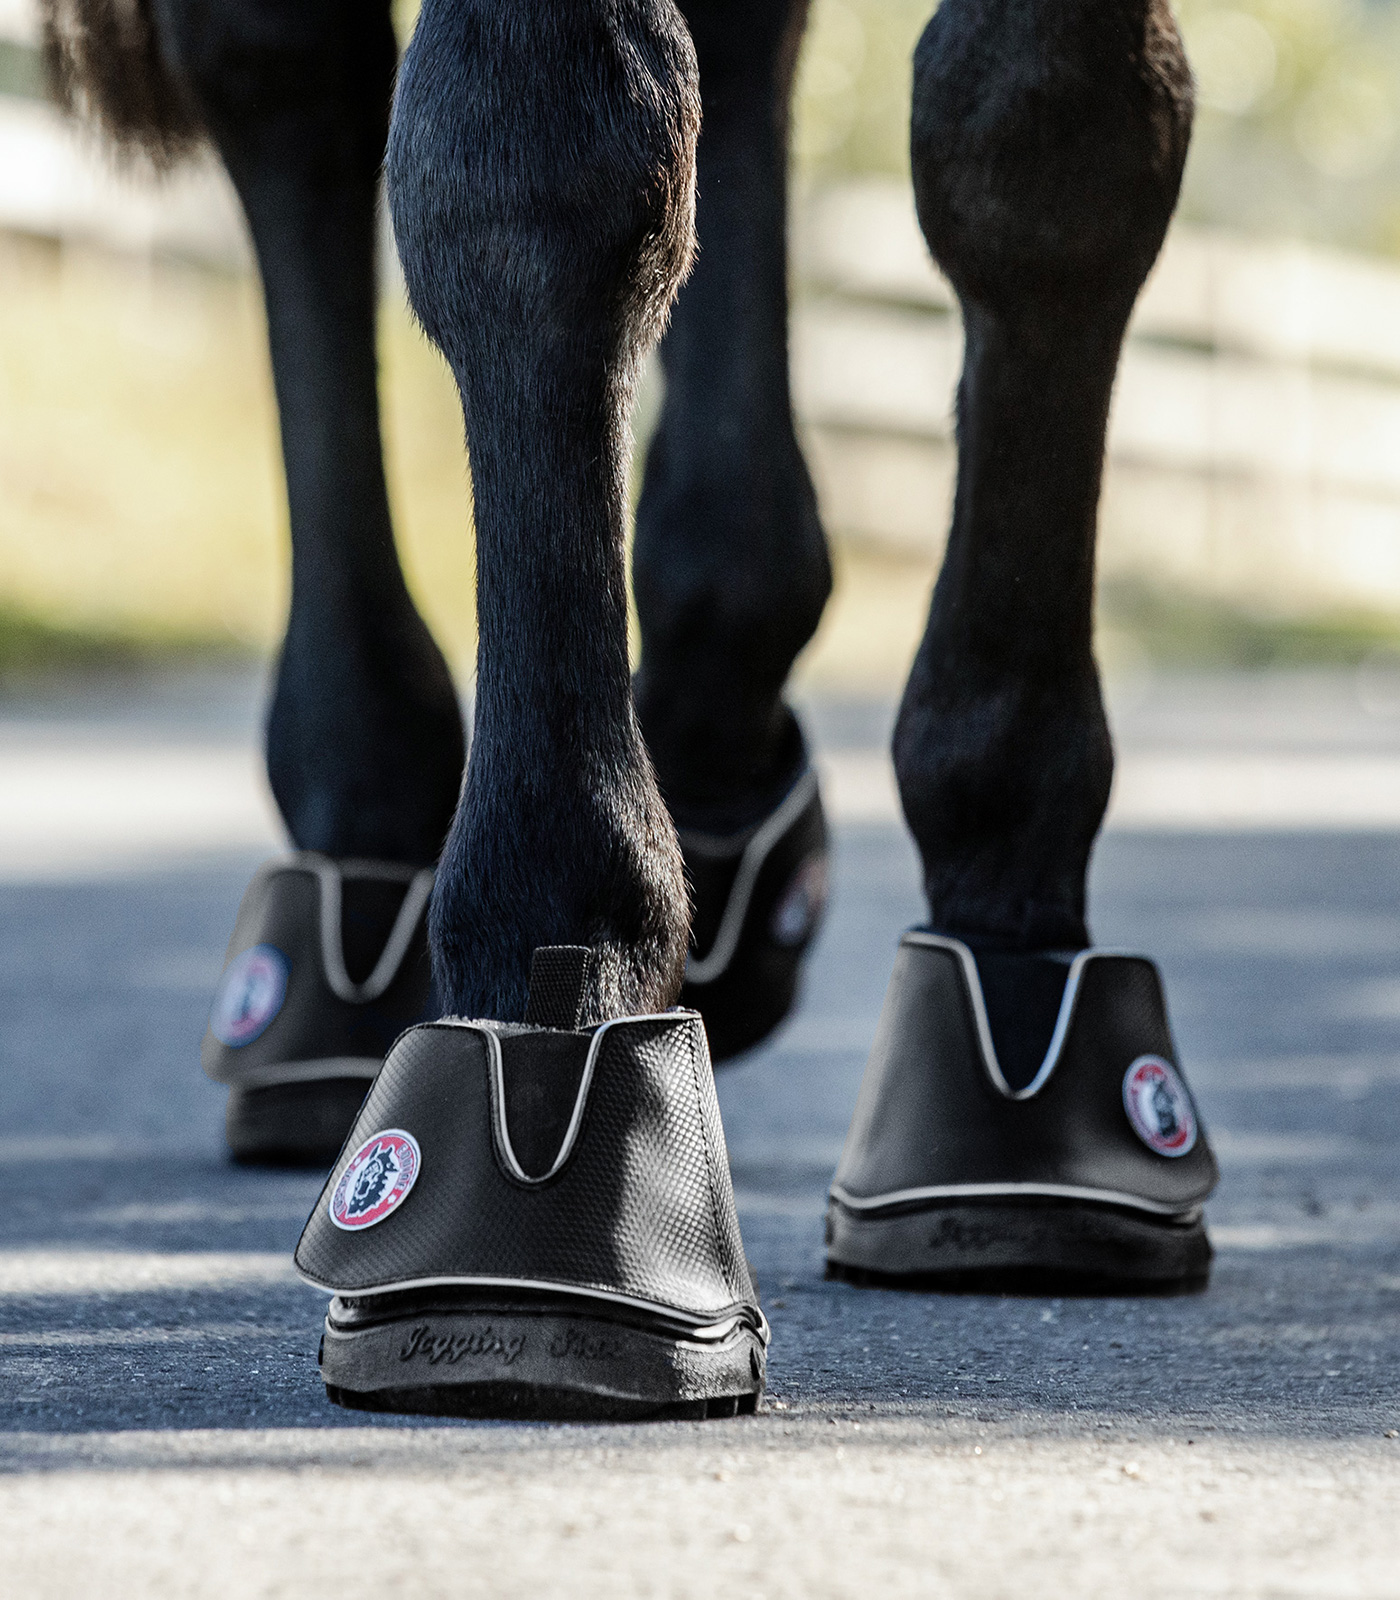 Coprizoccolo Equine Fusion Active Jogging Shoe Slim